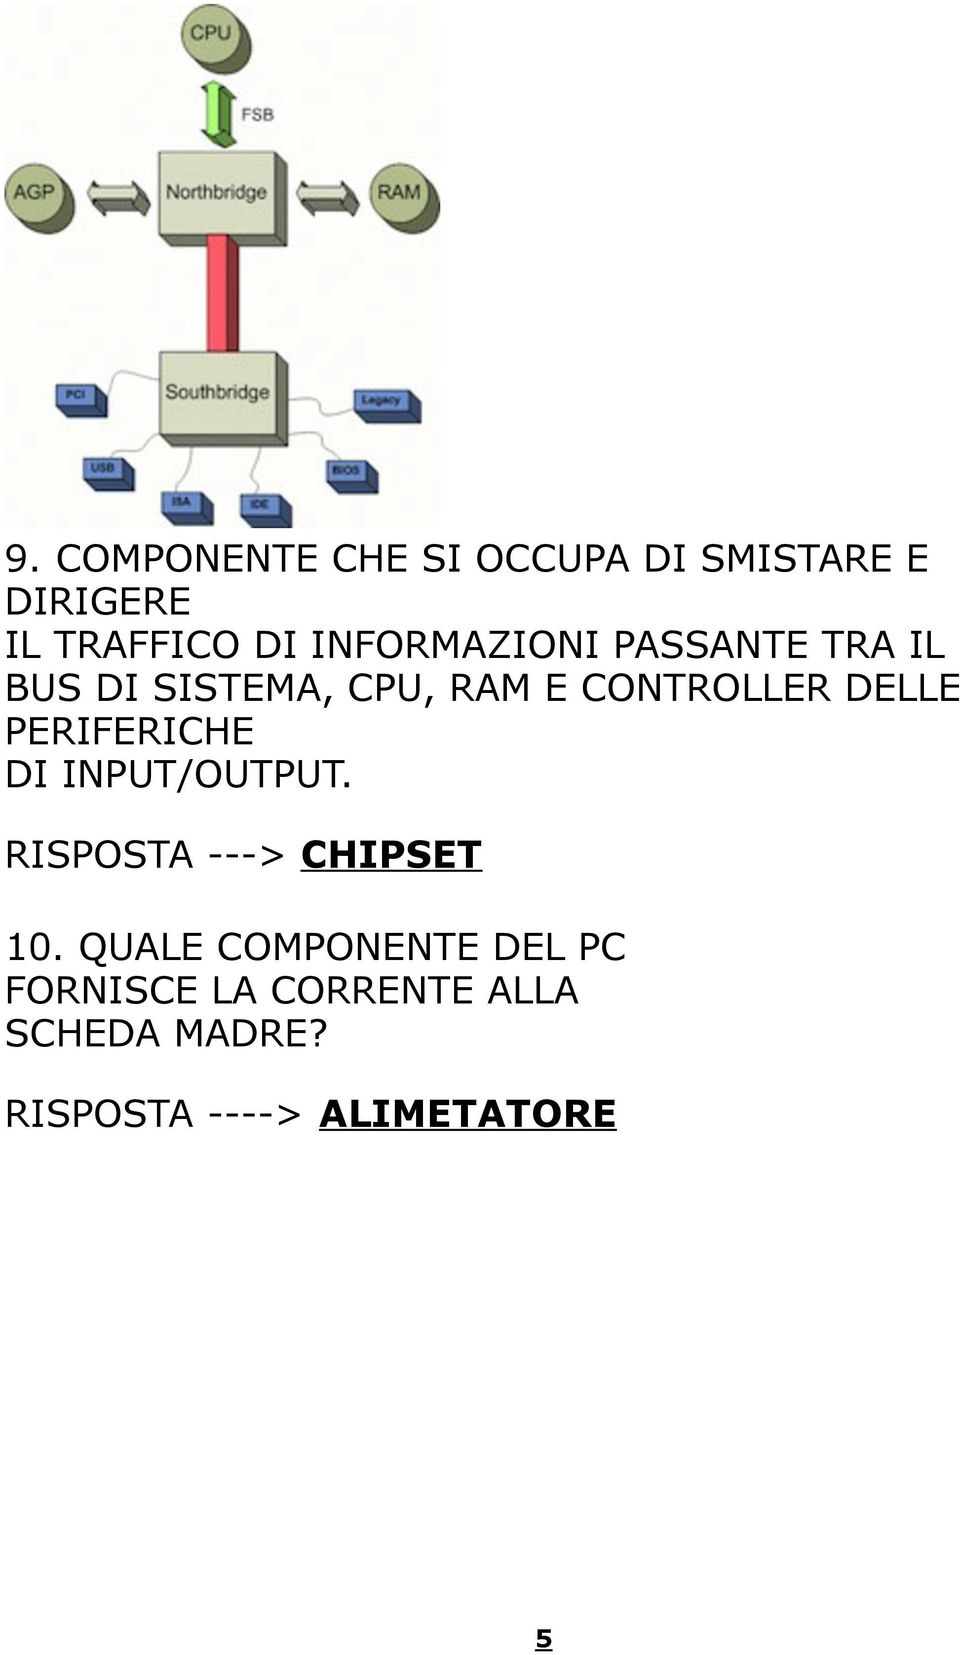 RISPOSTA ---> CHIPSET 10. QUALE COMPONENTE DEL PC FORNISCE LA CORRENTE ALLA SCHEDA MADRE?